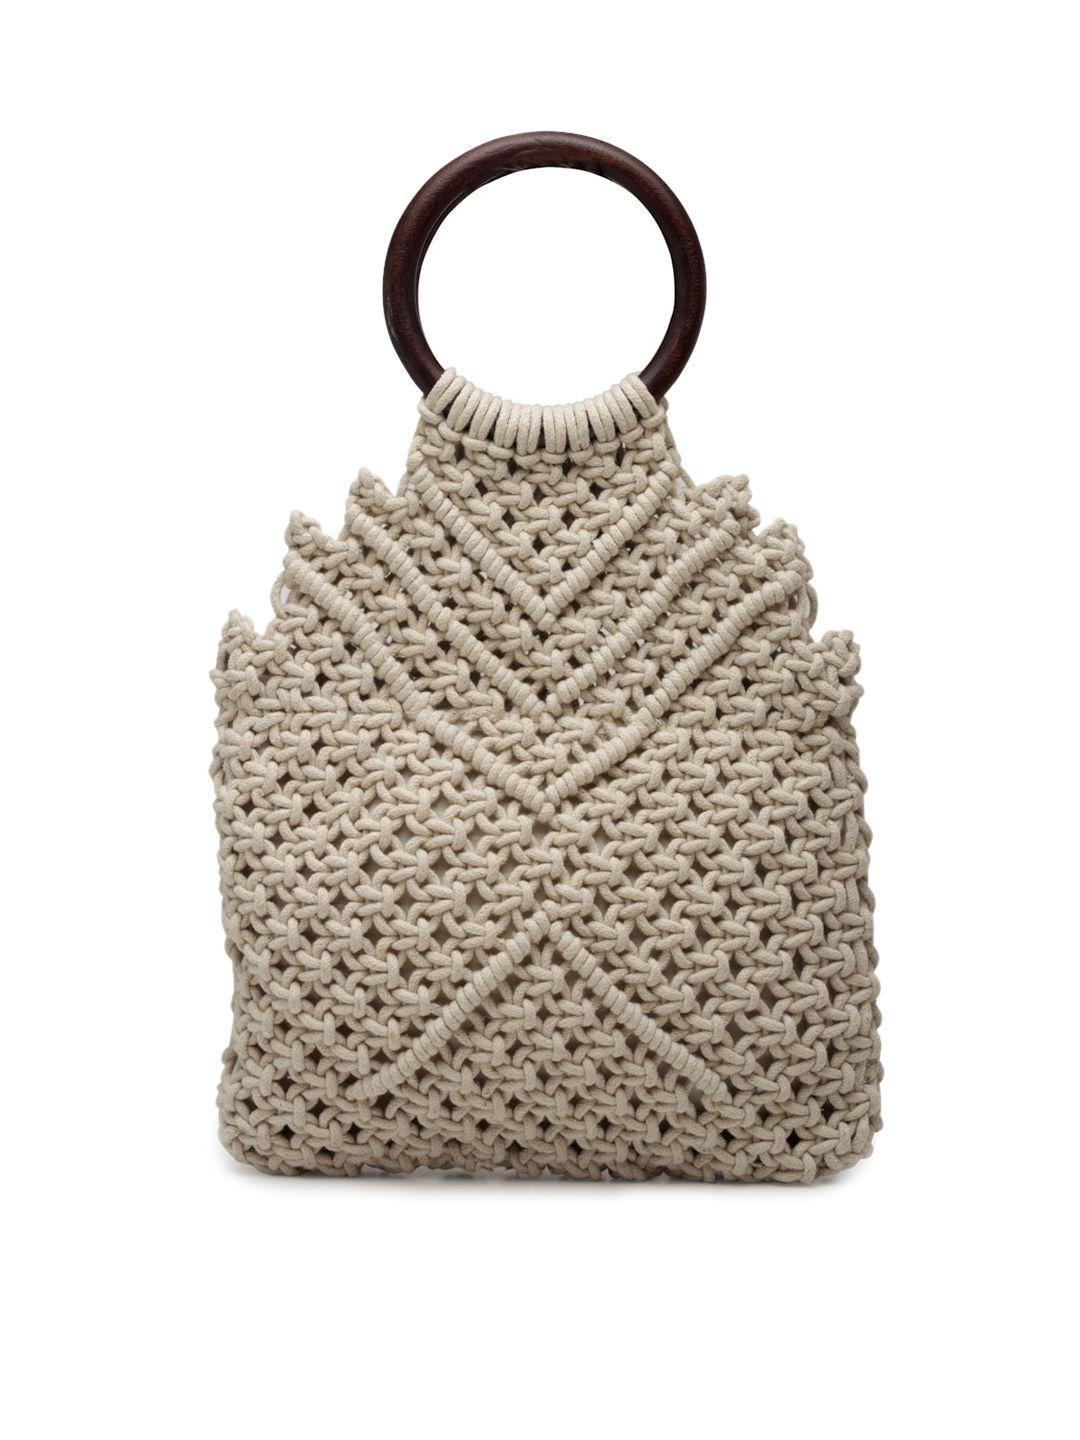 fabinaliv textured structured cotton handheld bag